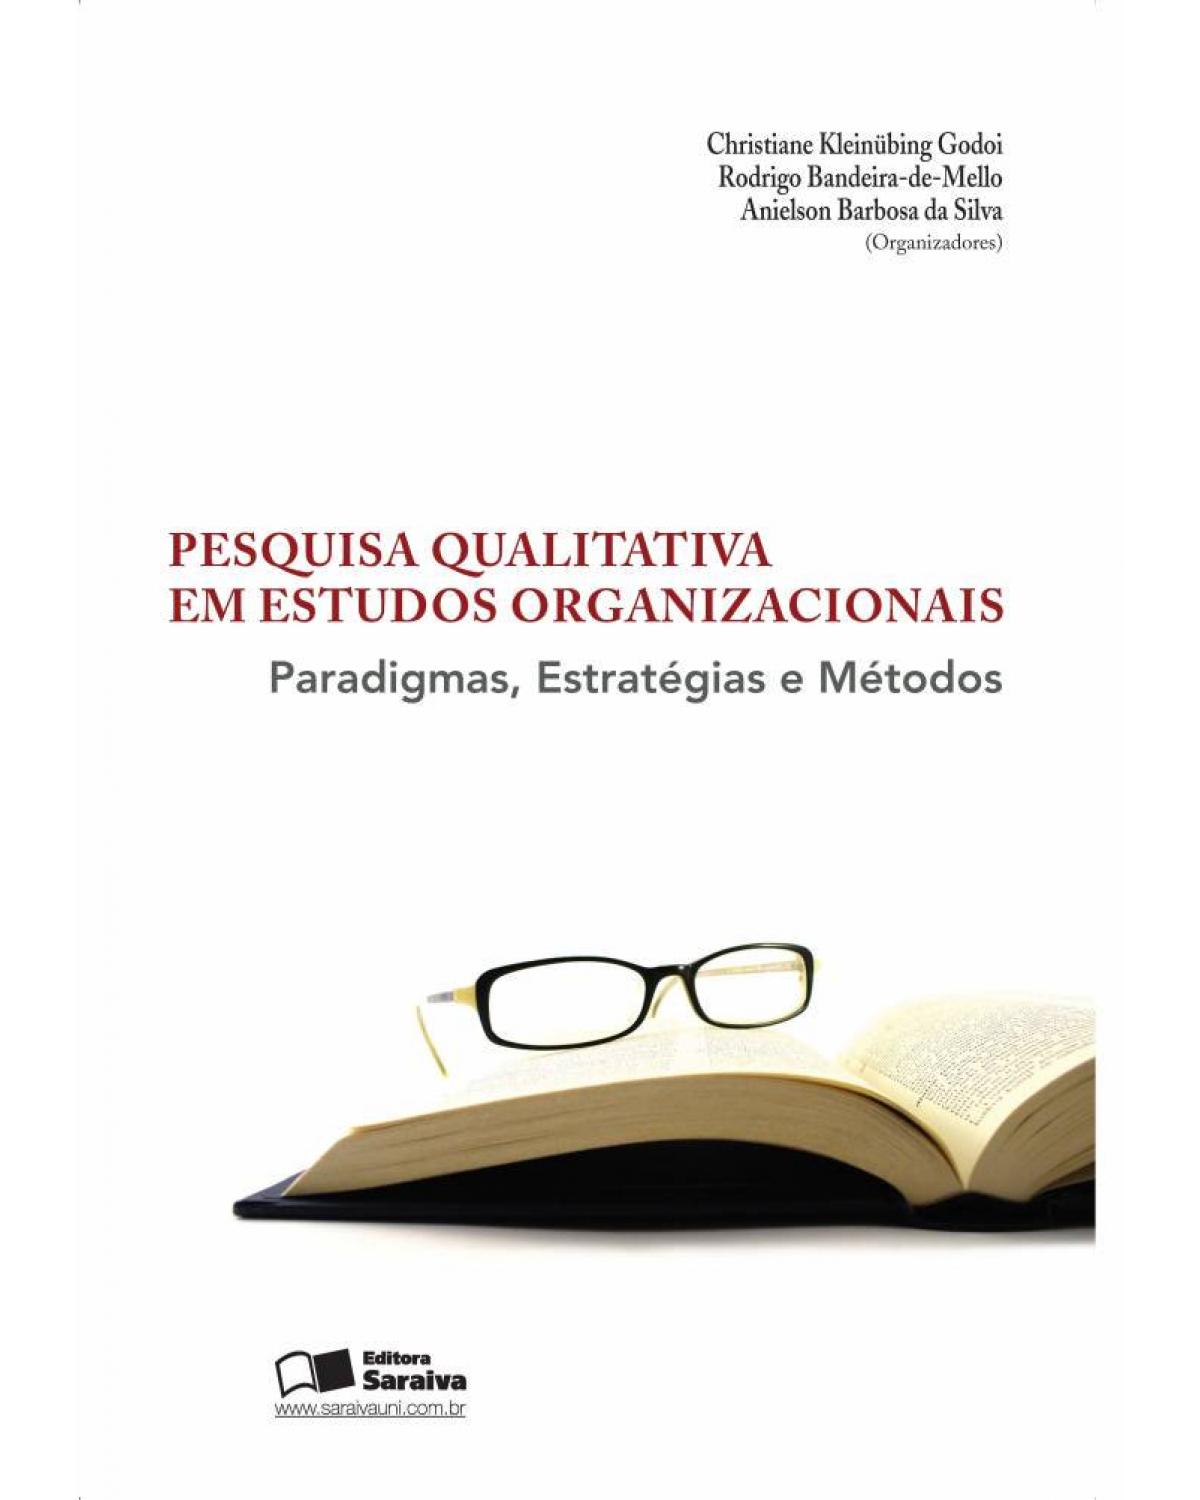 Pesquisa qualitativa em estudos organizacionais - paradigmas, estratégias e métodos - 2ª Edição | 2010